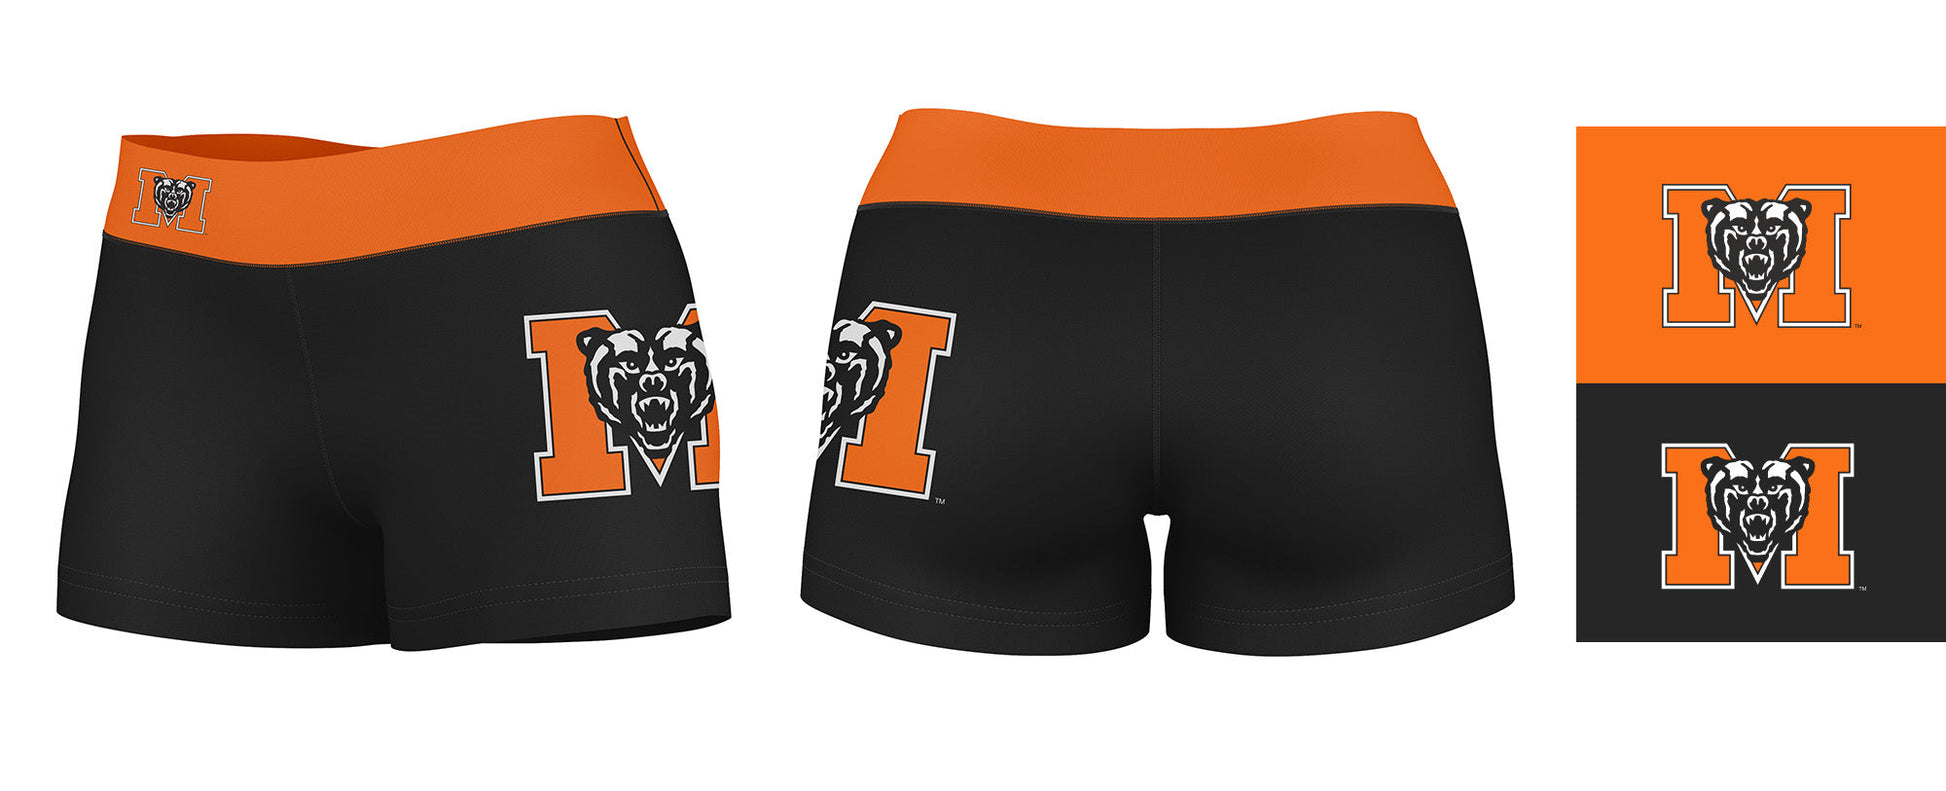 Mercer Bears MU Vive La Fete Logo on Thigh & Waistband Black & Orange Women Yoga Booty Workout Shorts 3.75 Inseam" - Vive La F̻te - Online Apparel Store